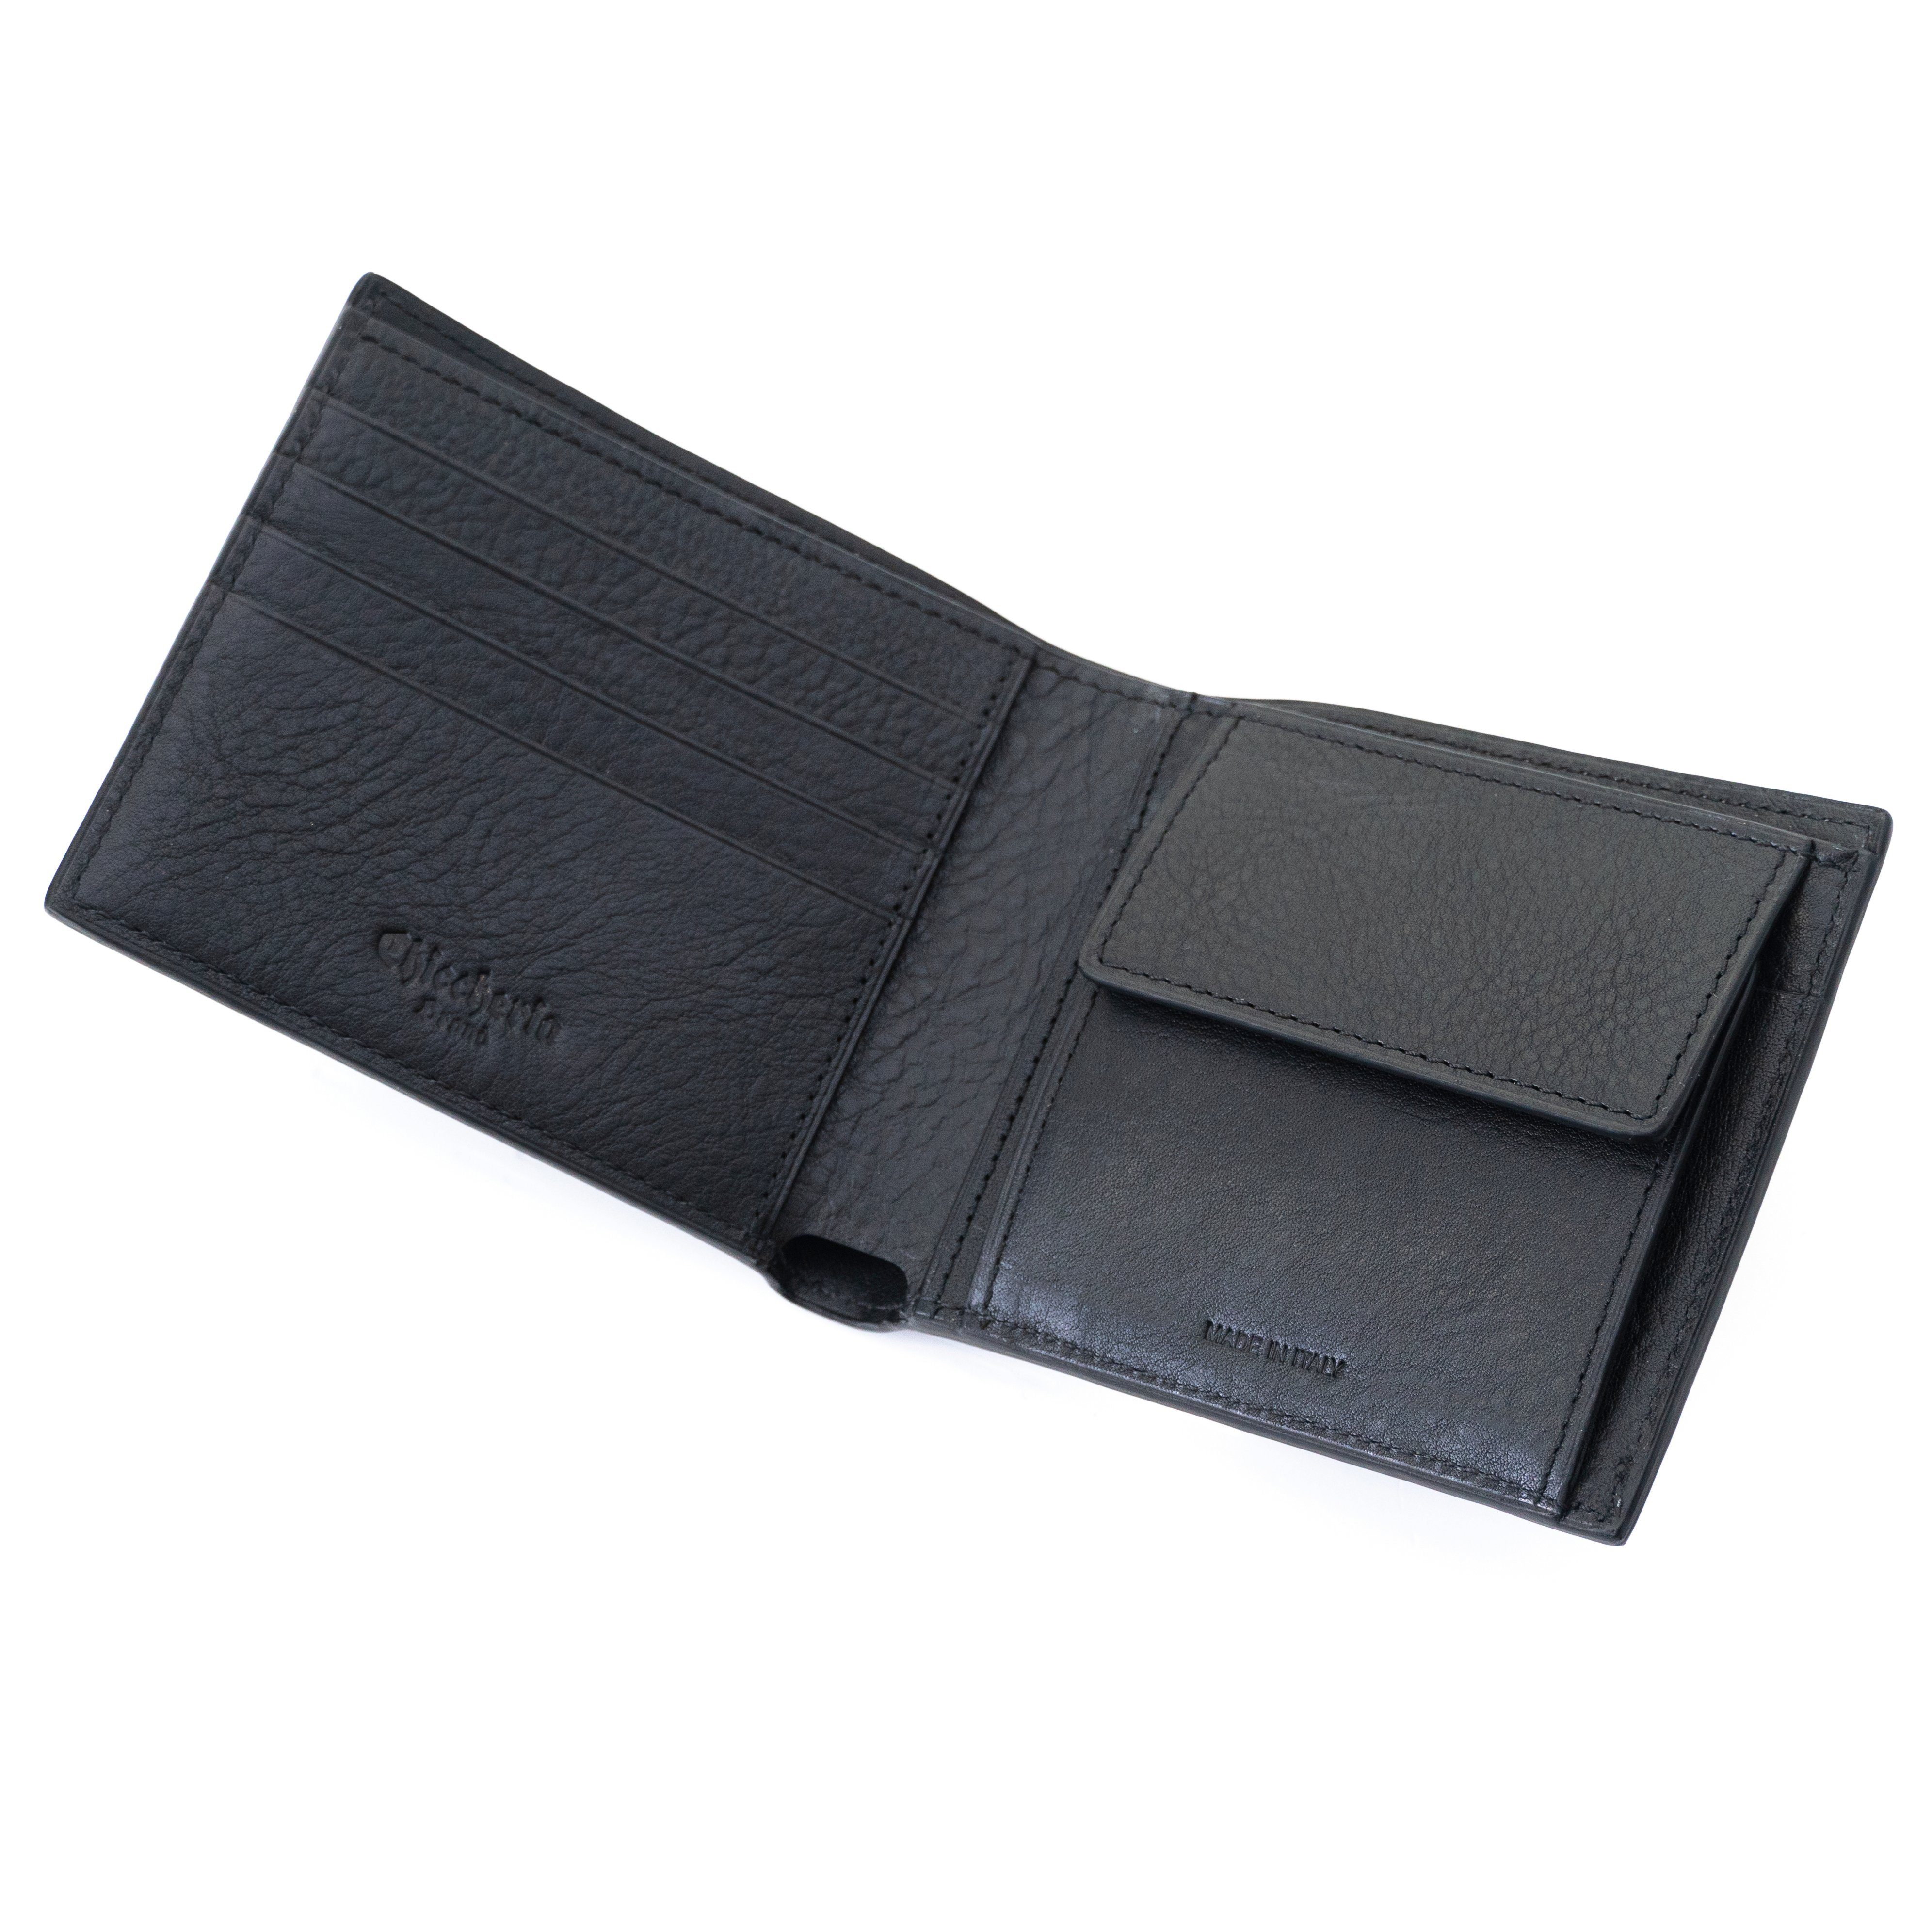 in Design elegantem Brand Chiccheria in Kreditkartenfächer, Brieftasche Made Leder Italy, Portemonnaie,